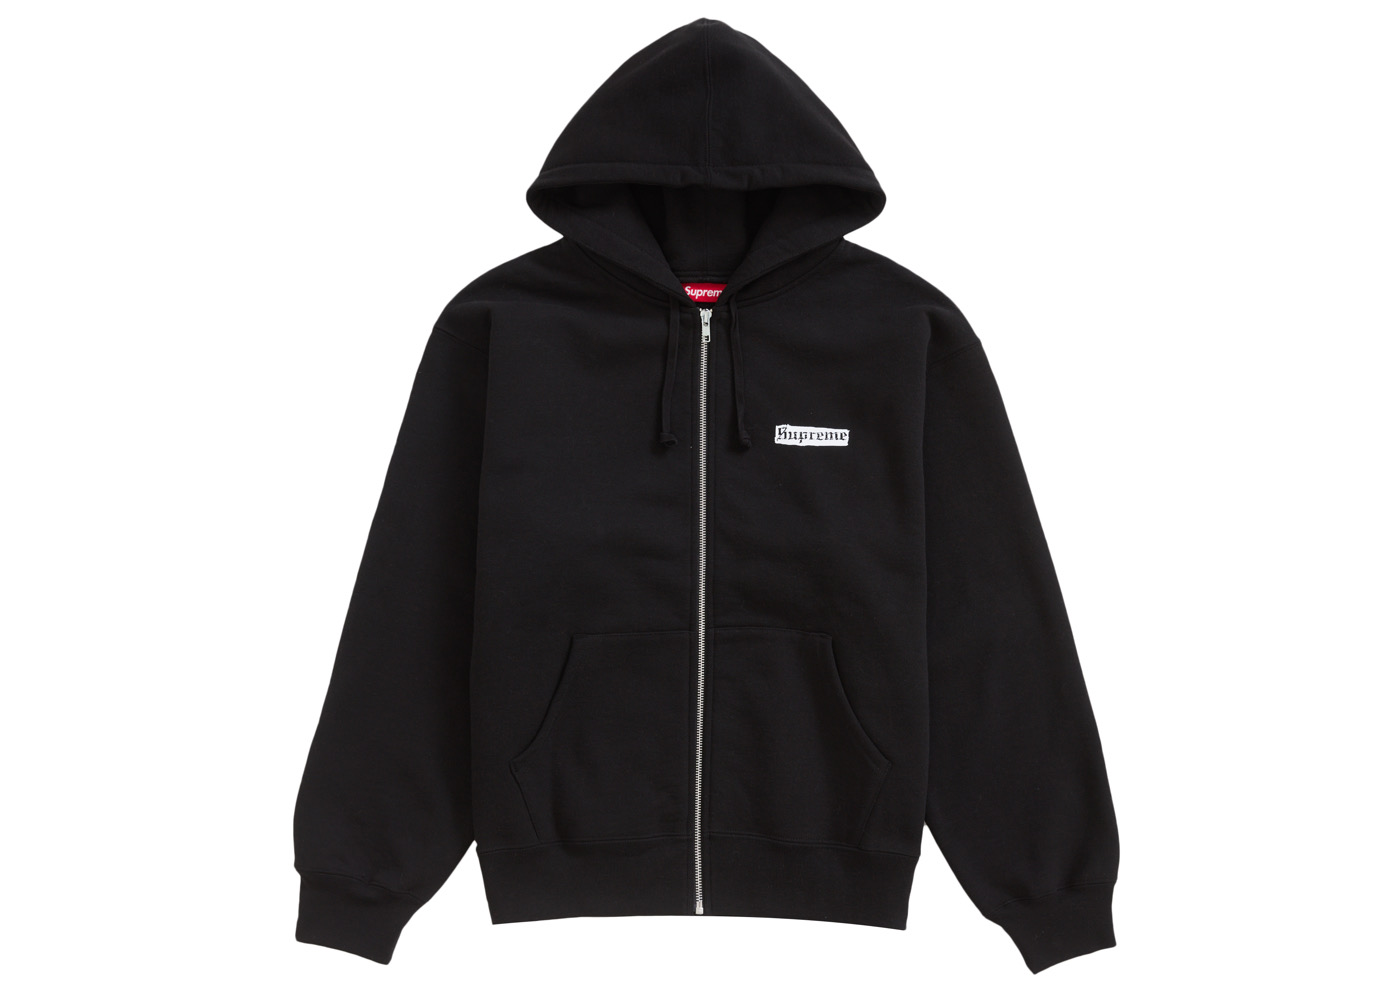 19,920円Supreme Spread Zip Up Hooded Sweatshirt